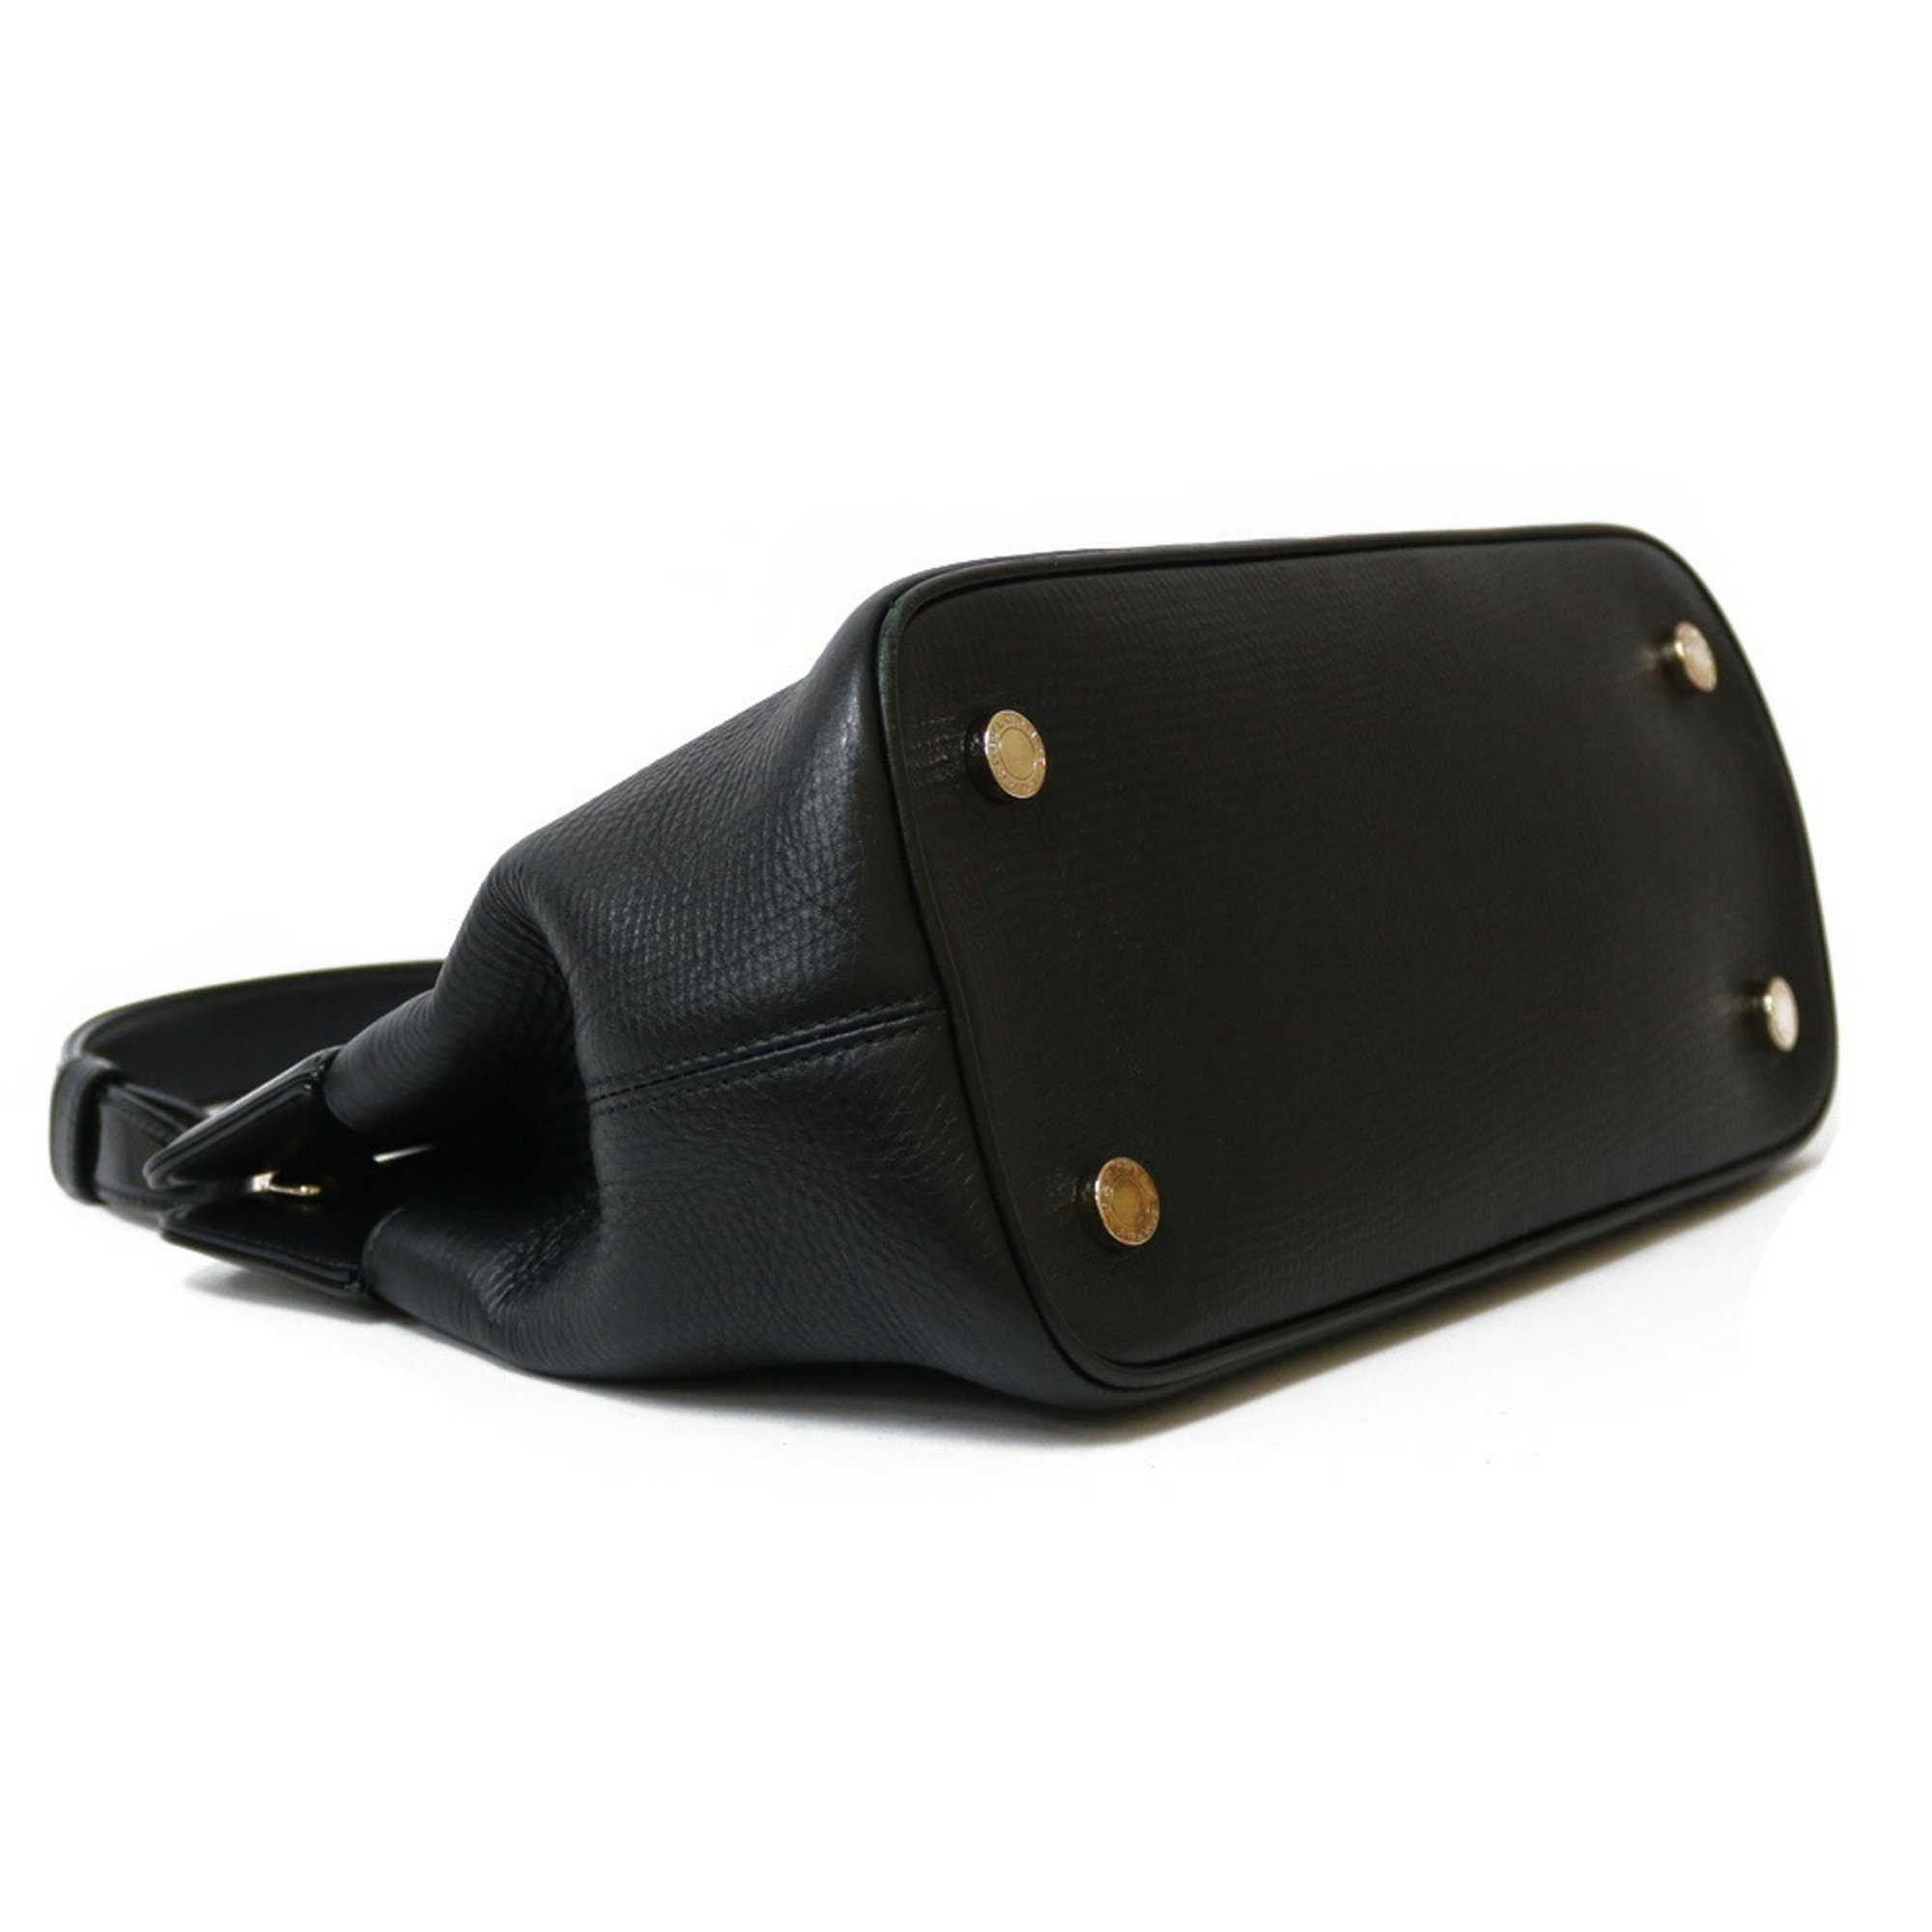 BVLGARI Bvlgari Shoulder Bag Handbag Black Ladies